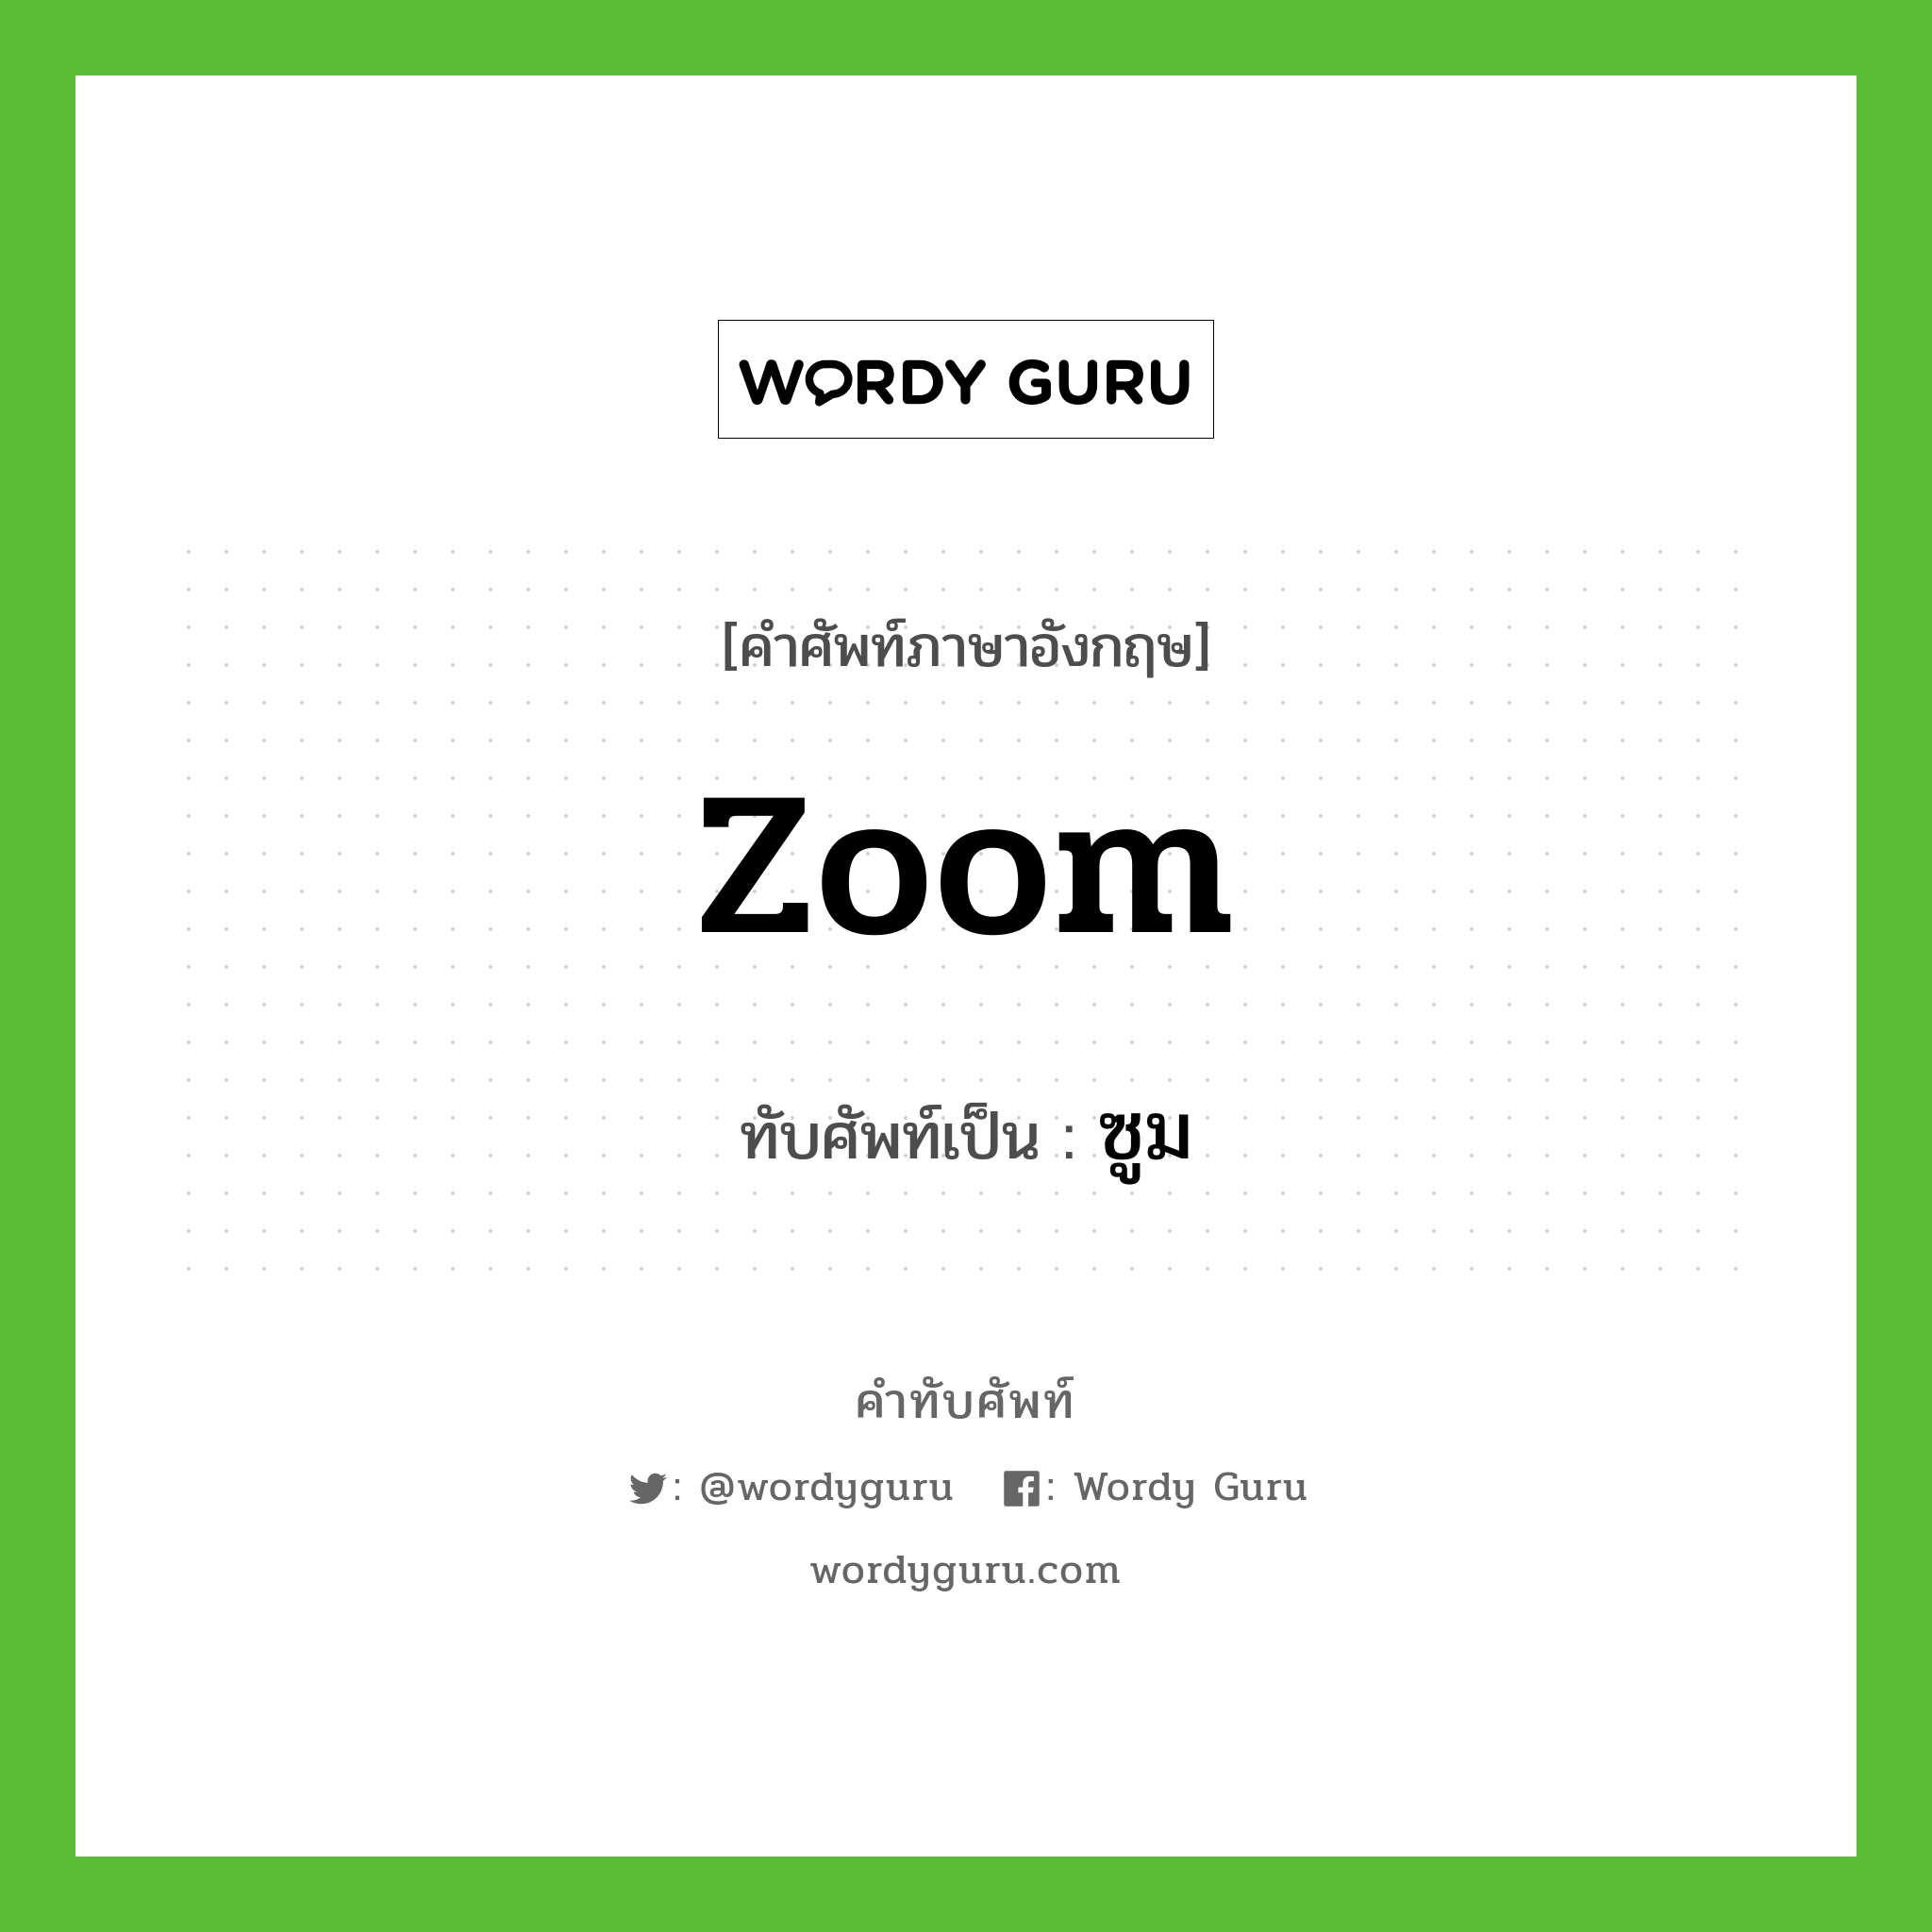 zoom เขียนเป็นคำไทยว่าอะไร?, คำศัพท์ภาษาอังกฤษ zoom ทับศัพท์เป็น ซูม